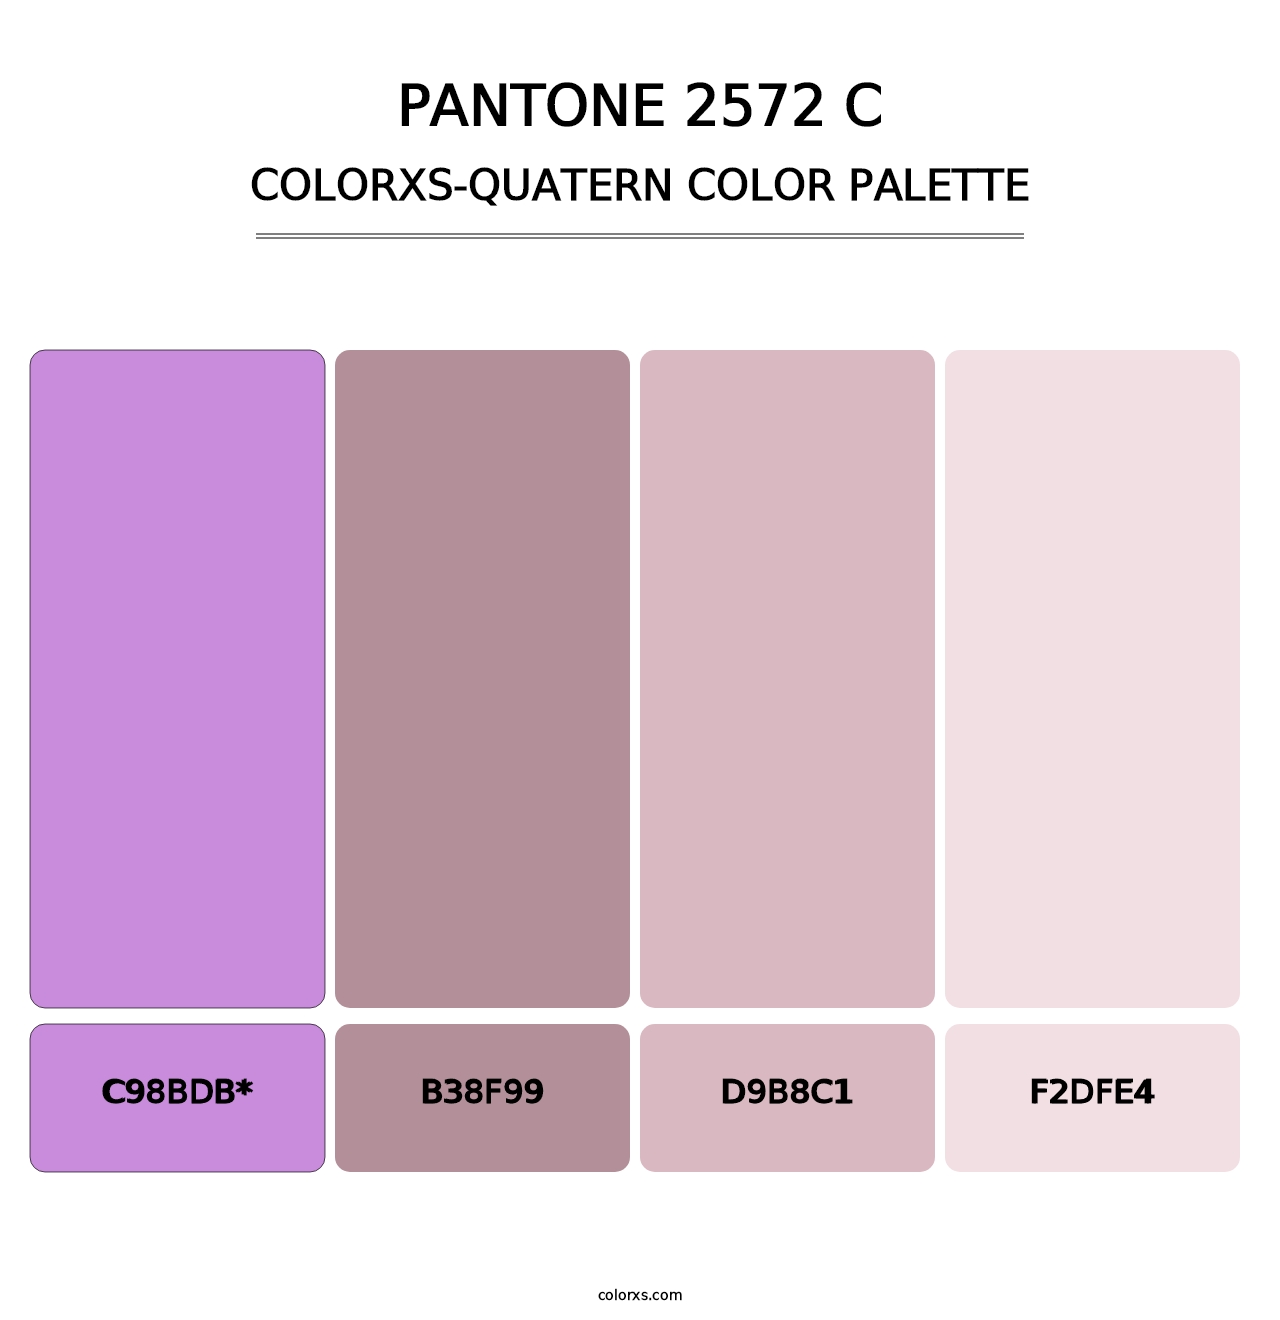 PANTONE 2572 C - Colorxs Quatern Palette